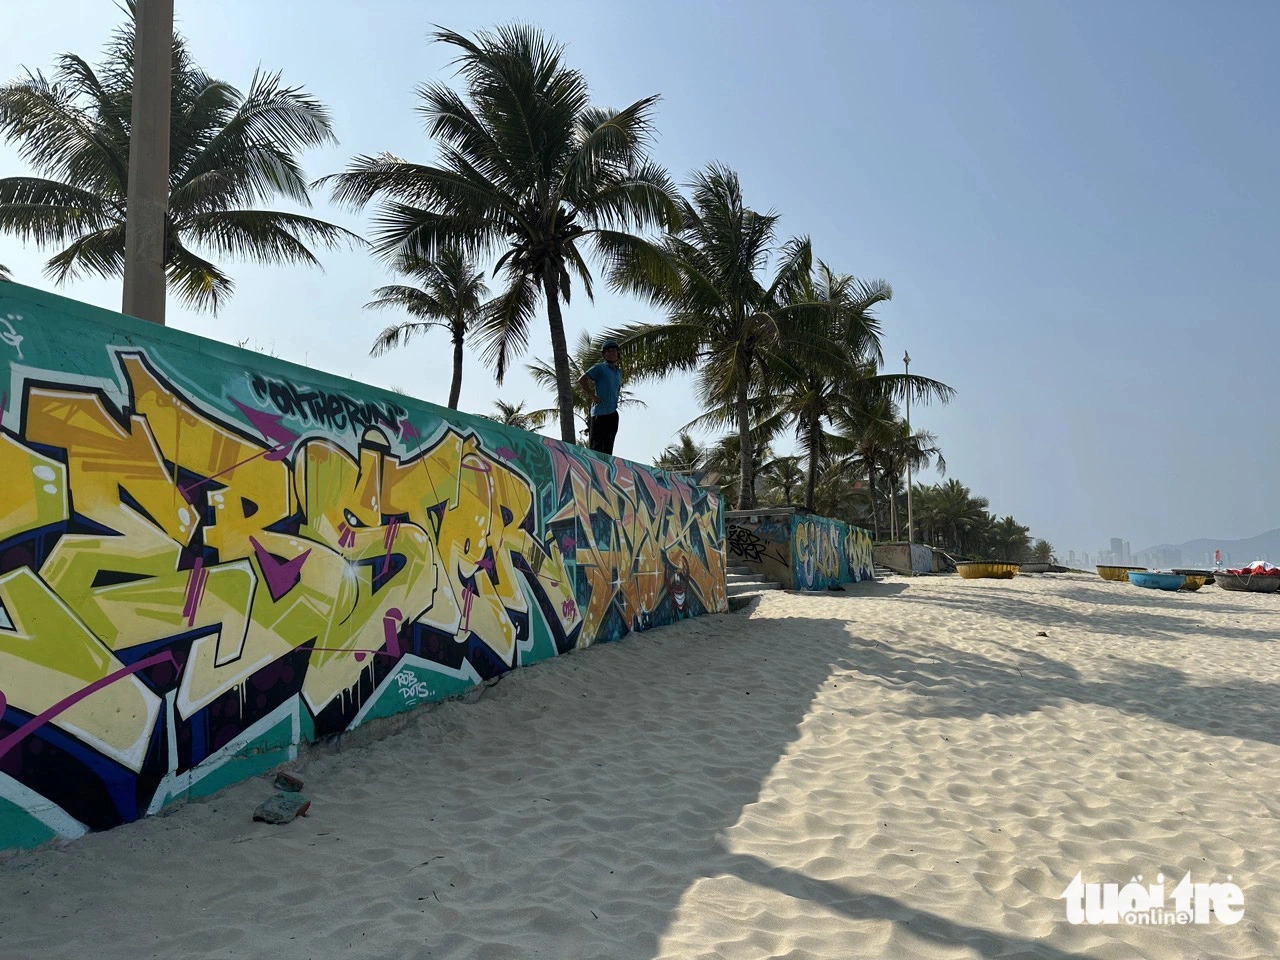 Da Nang beach defaced by graffiti